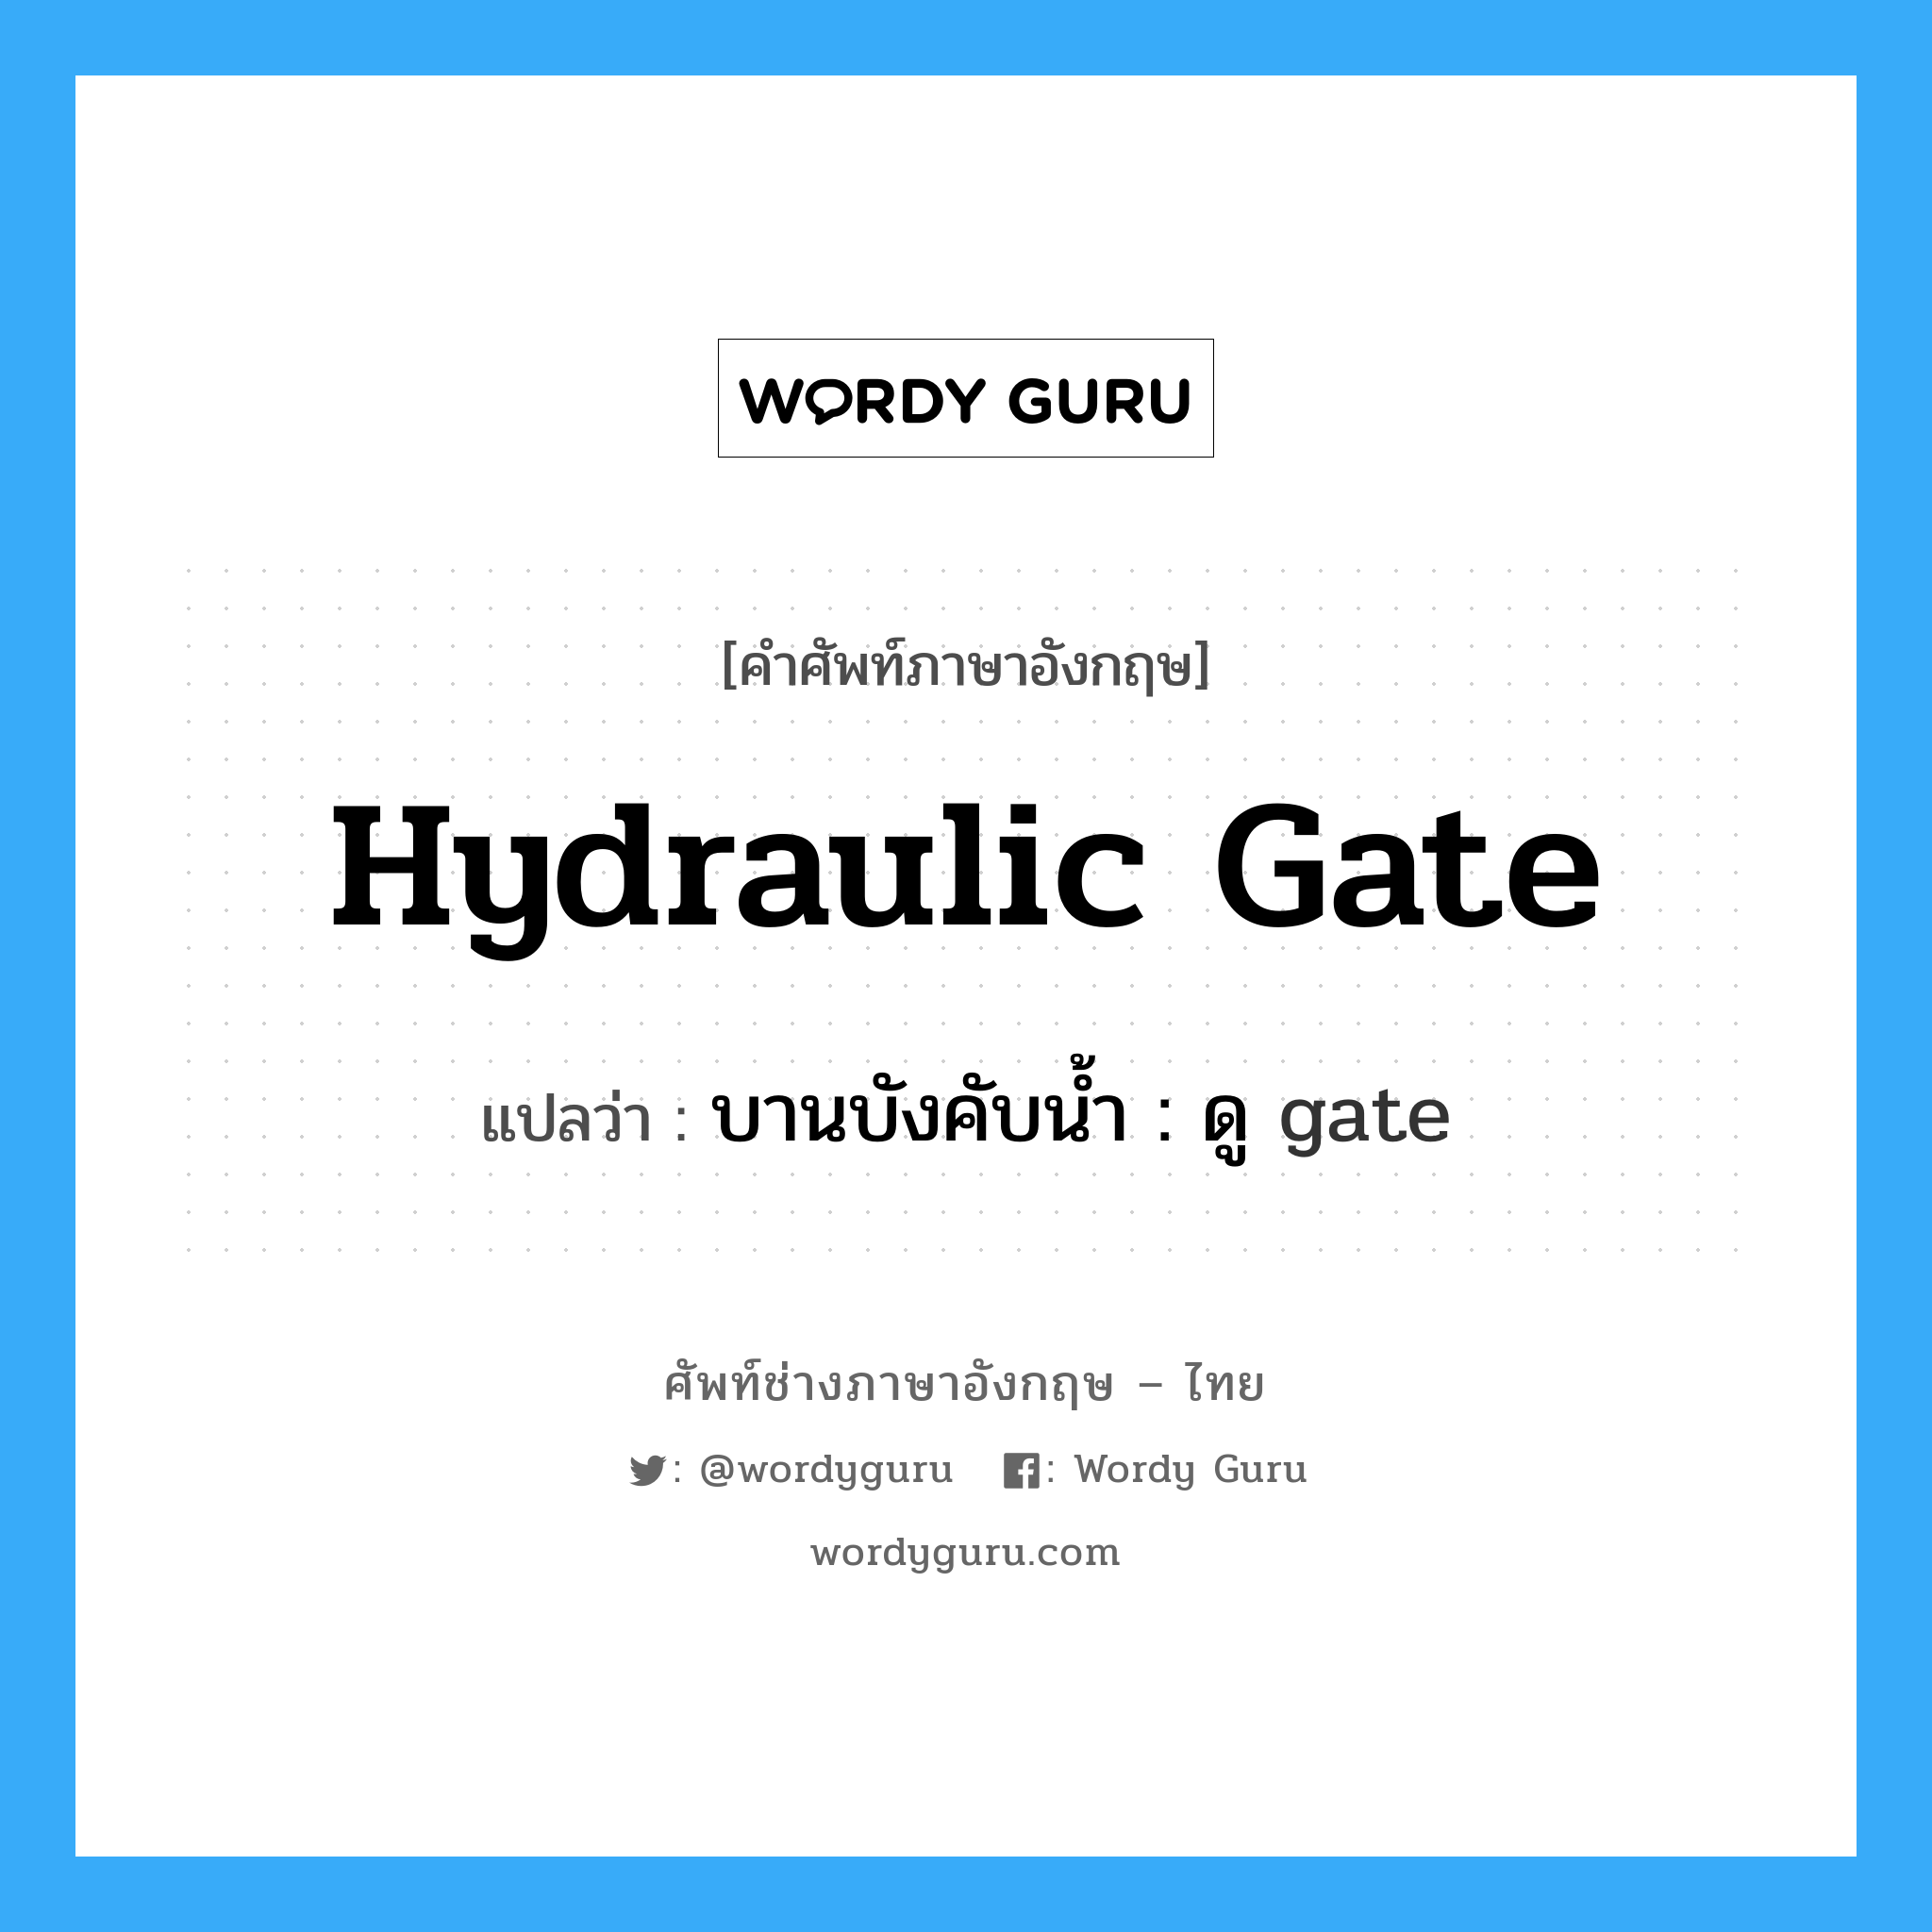 บานบังคับน้ำ : ดู gate ภาษาอังกฤษ?, คำศัพท์ช่างภาษาอังกฤษ - ไทย บานบังคับน้ำ : ดู gate คำศัพท์ภาษาอังกฤษ บานบังคับน้ำ : ดู gate แปลว่า hydraulic gate